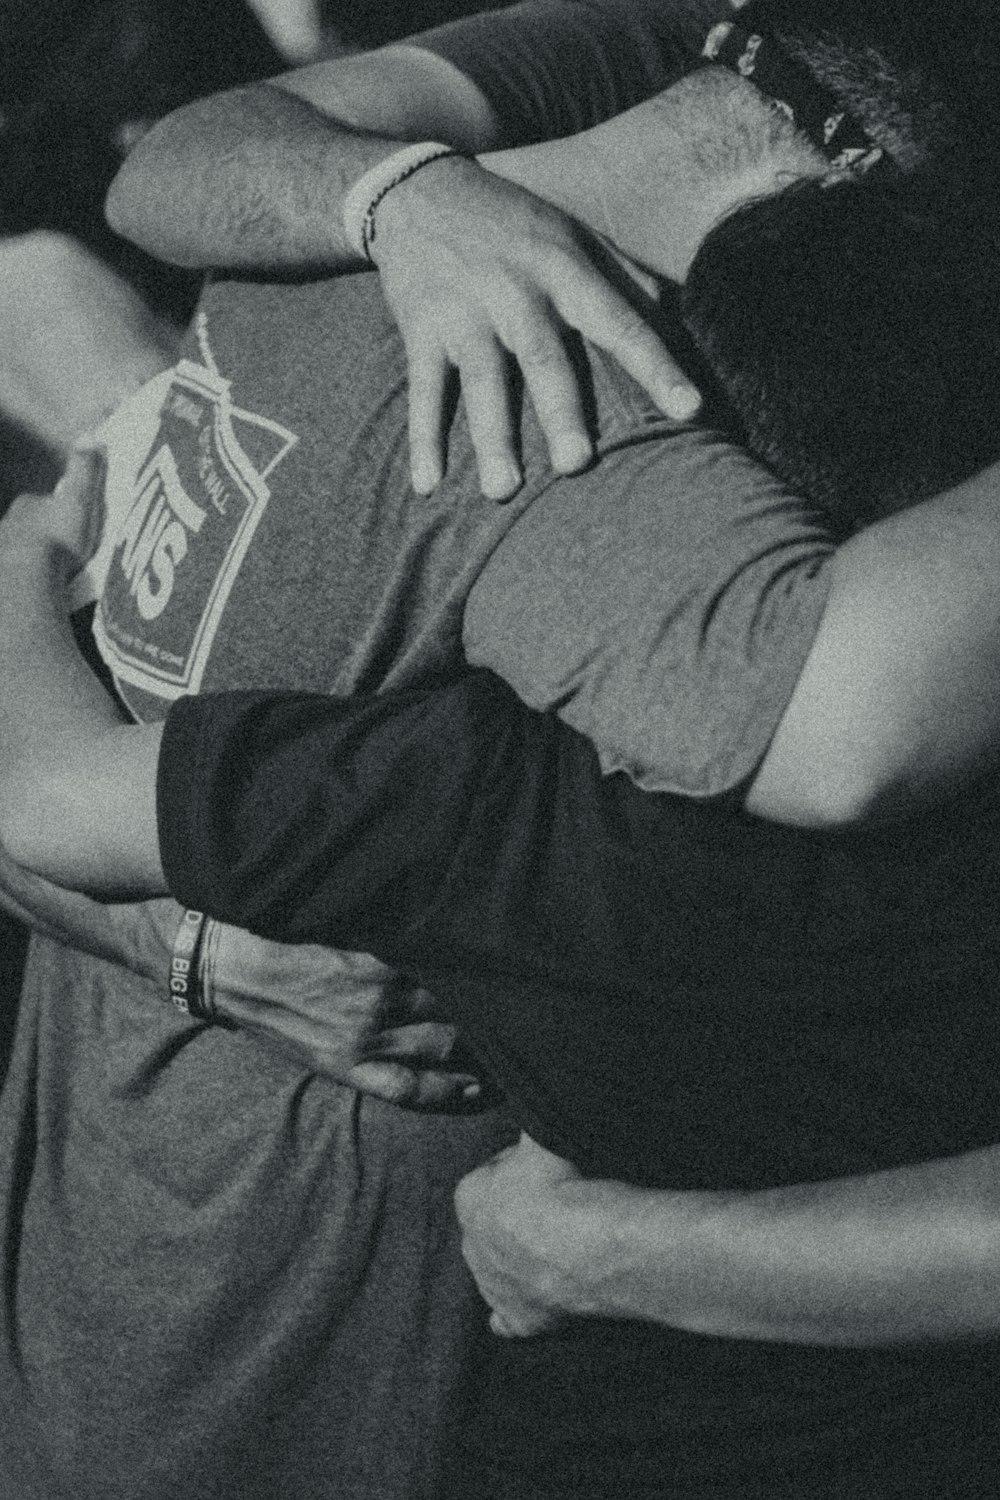 fotografia in scala di grigi di uomini che fanno abbraccio di gruppo